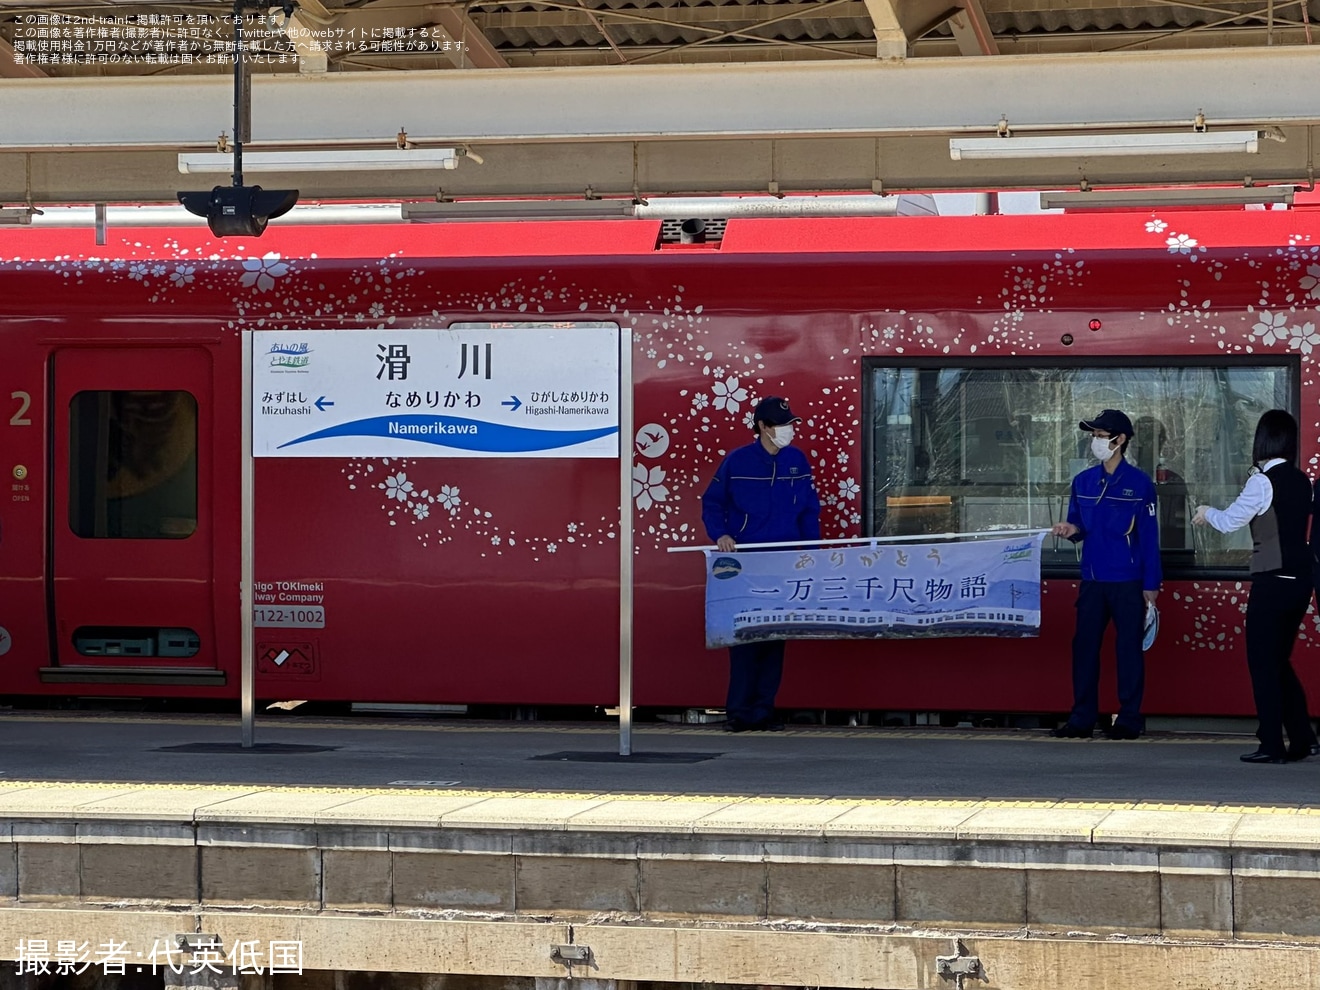 【トキ鉄】「雪月花」があいの風とやま鉄道への乗り入れ「越後・越中紀行」ツアーを催行の拡大写真